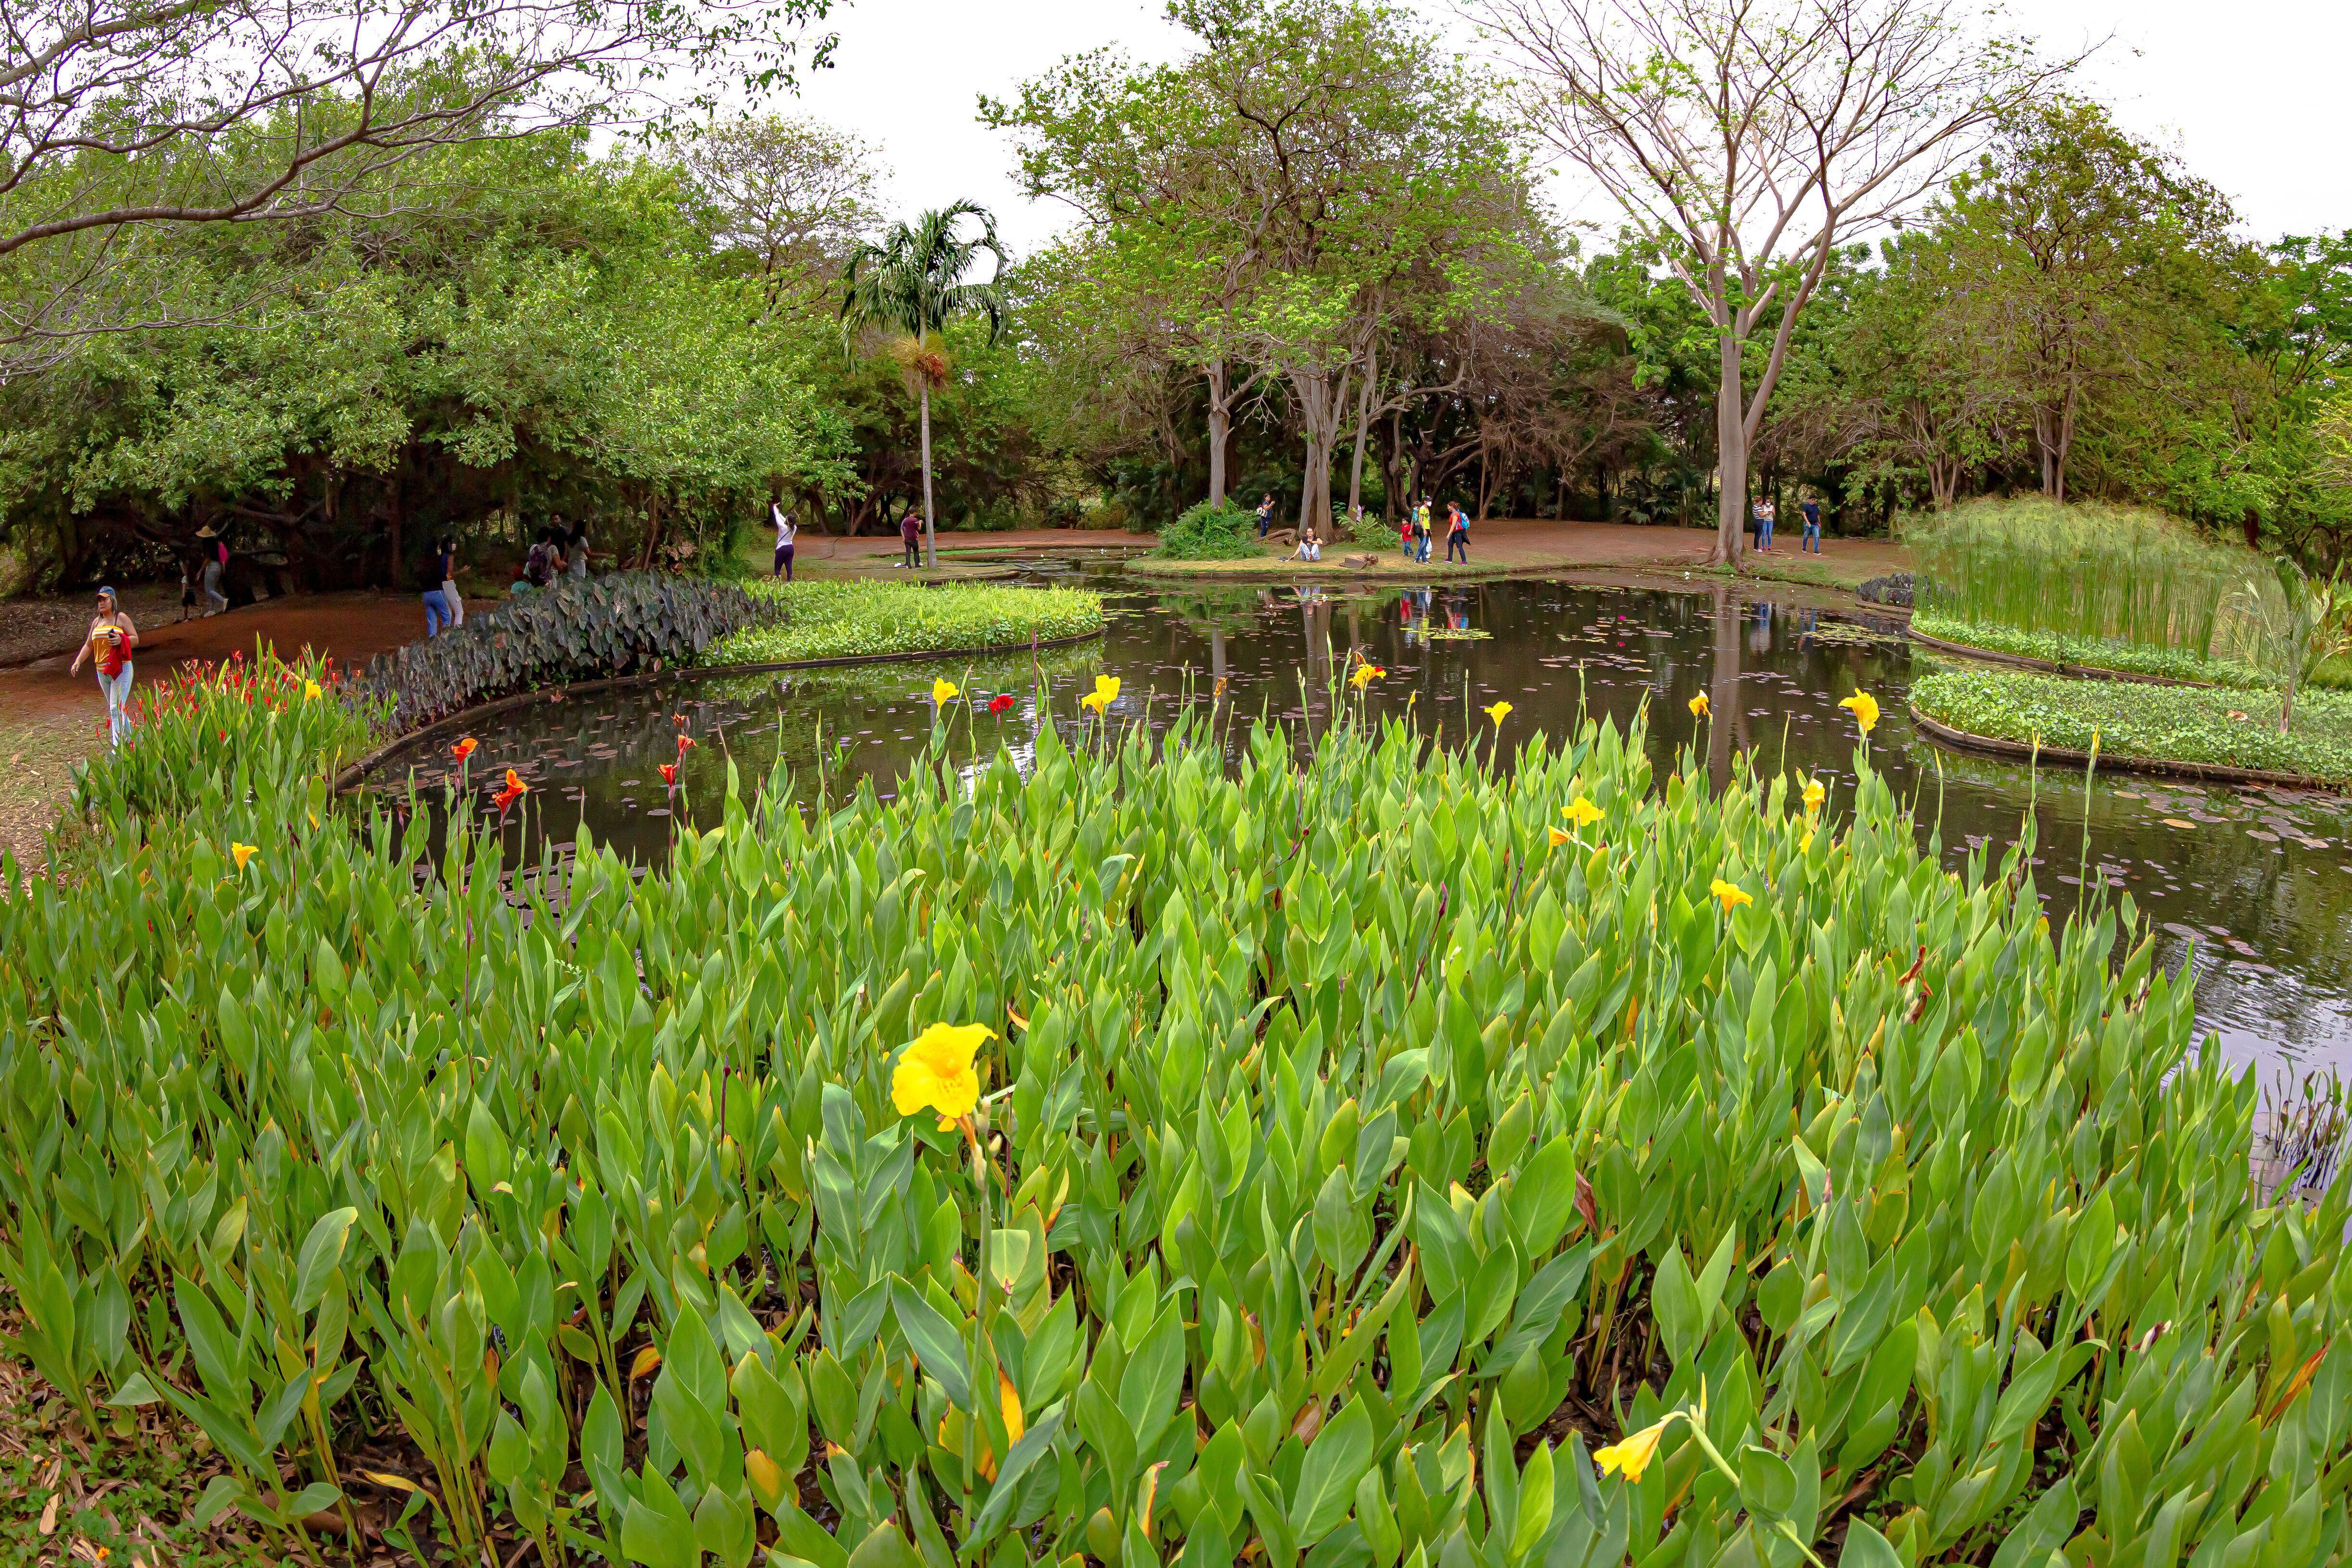  Jardín Botánico de Maracaibo en Venezuela.© JOSE